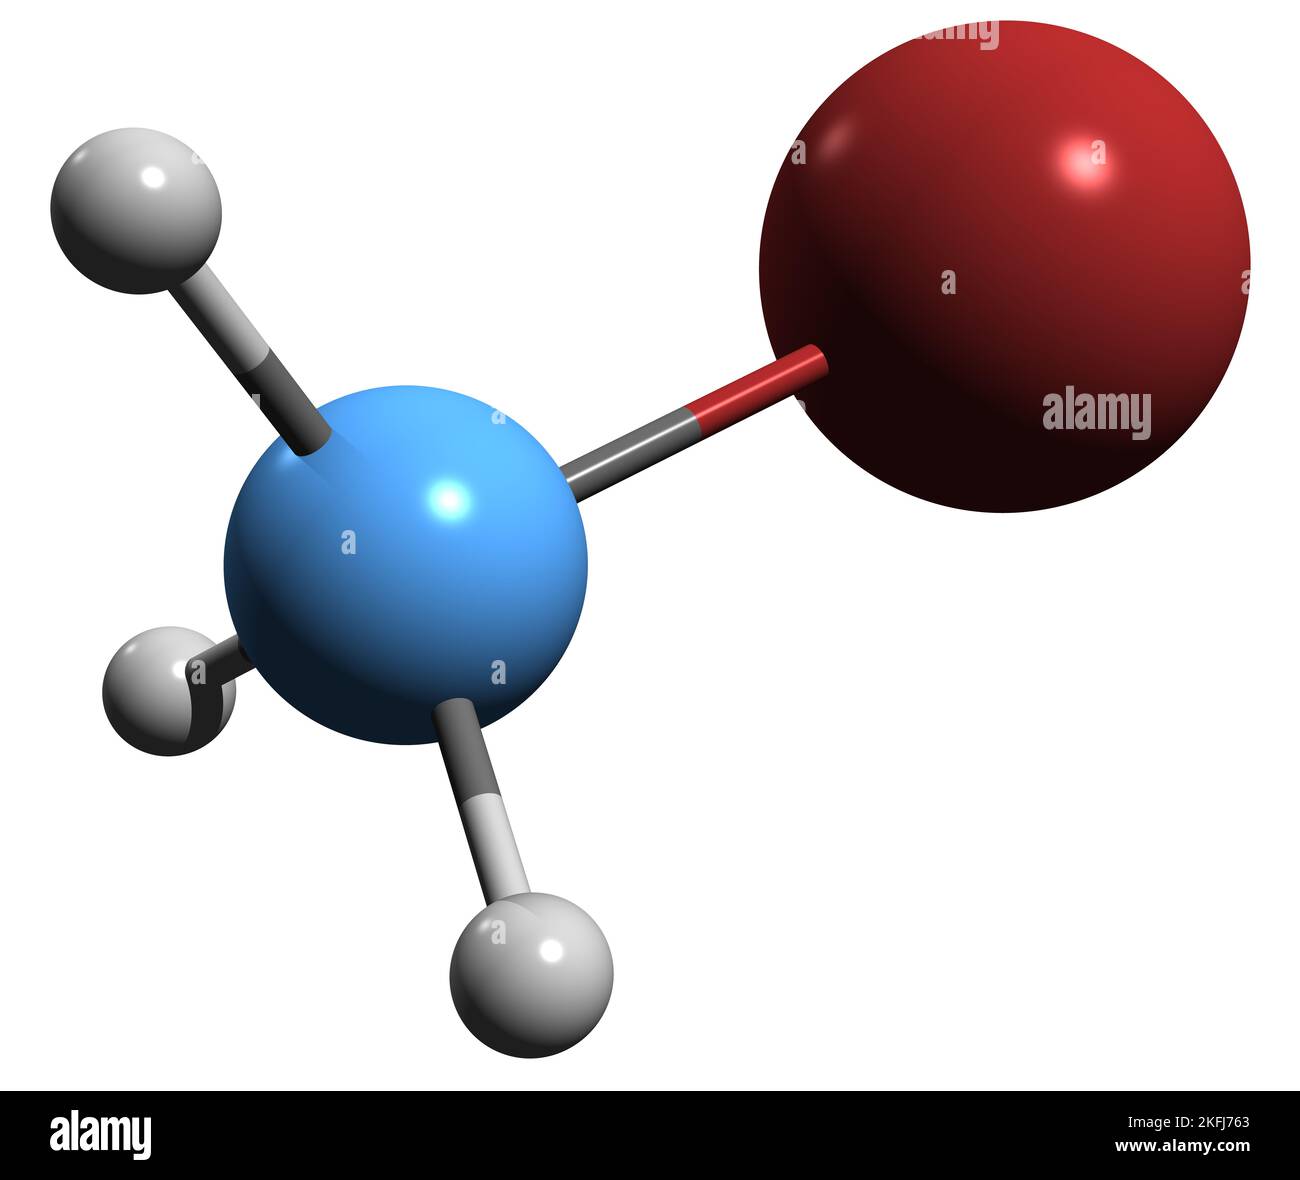 3D Bild der Skelettformel von Brommethan - molekularchemische Struktur der Organobromverbindung Methylbromid auf weißem Hintergrund isoliert Stockfoto